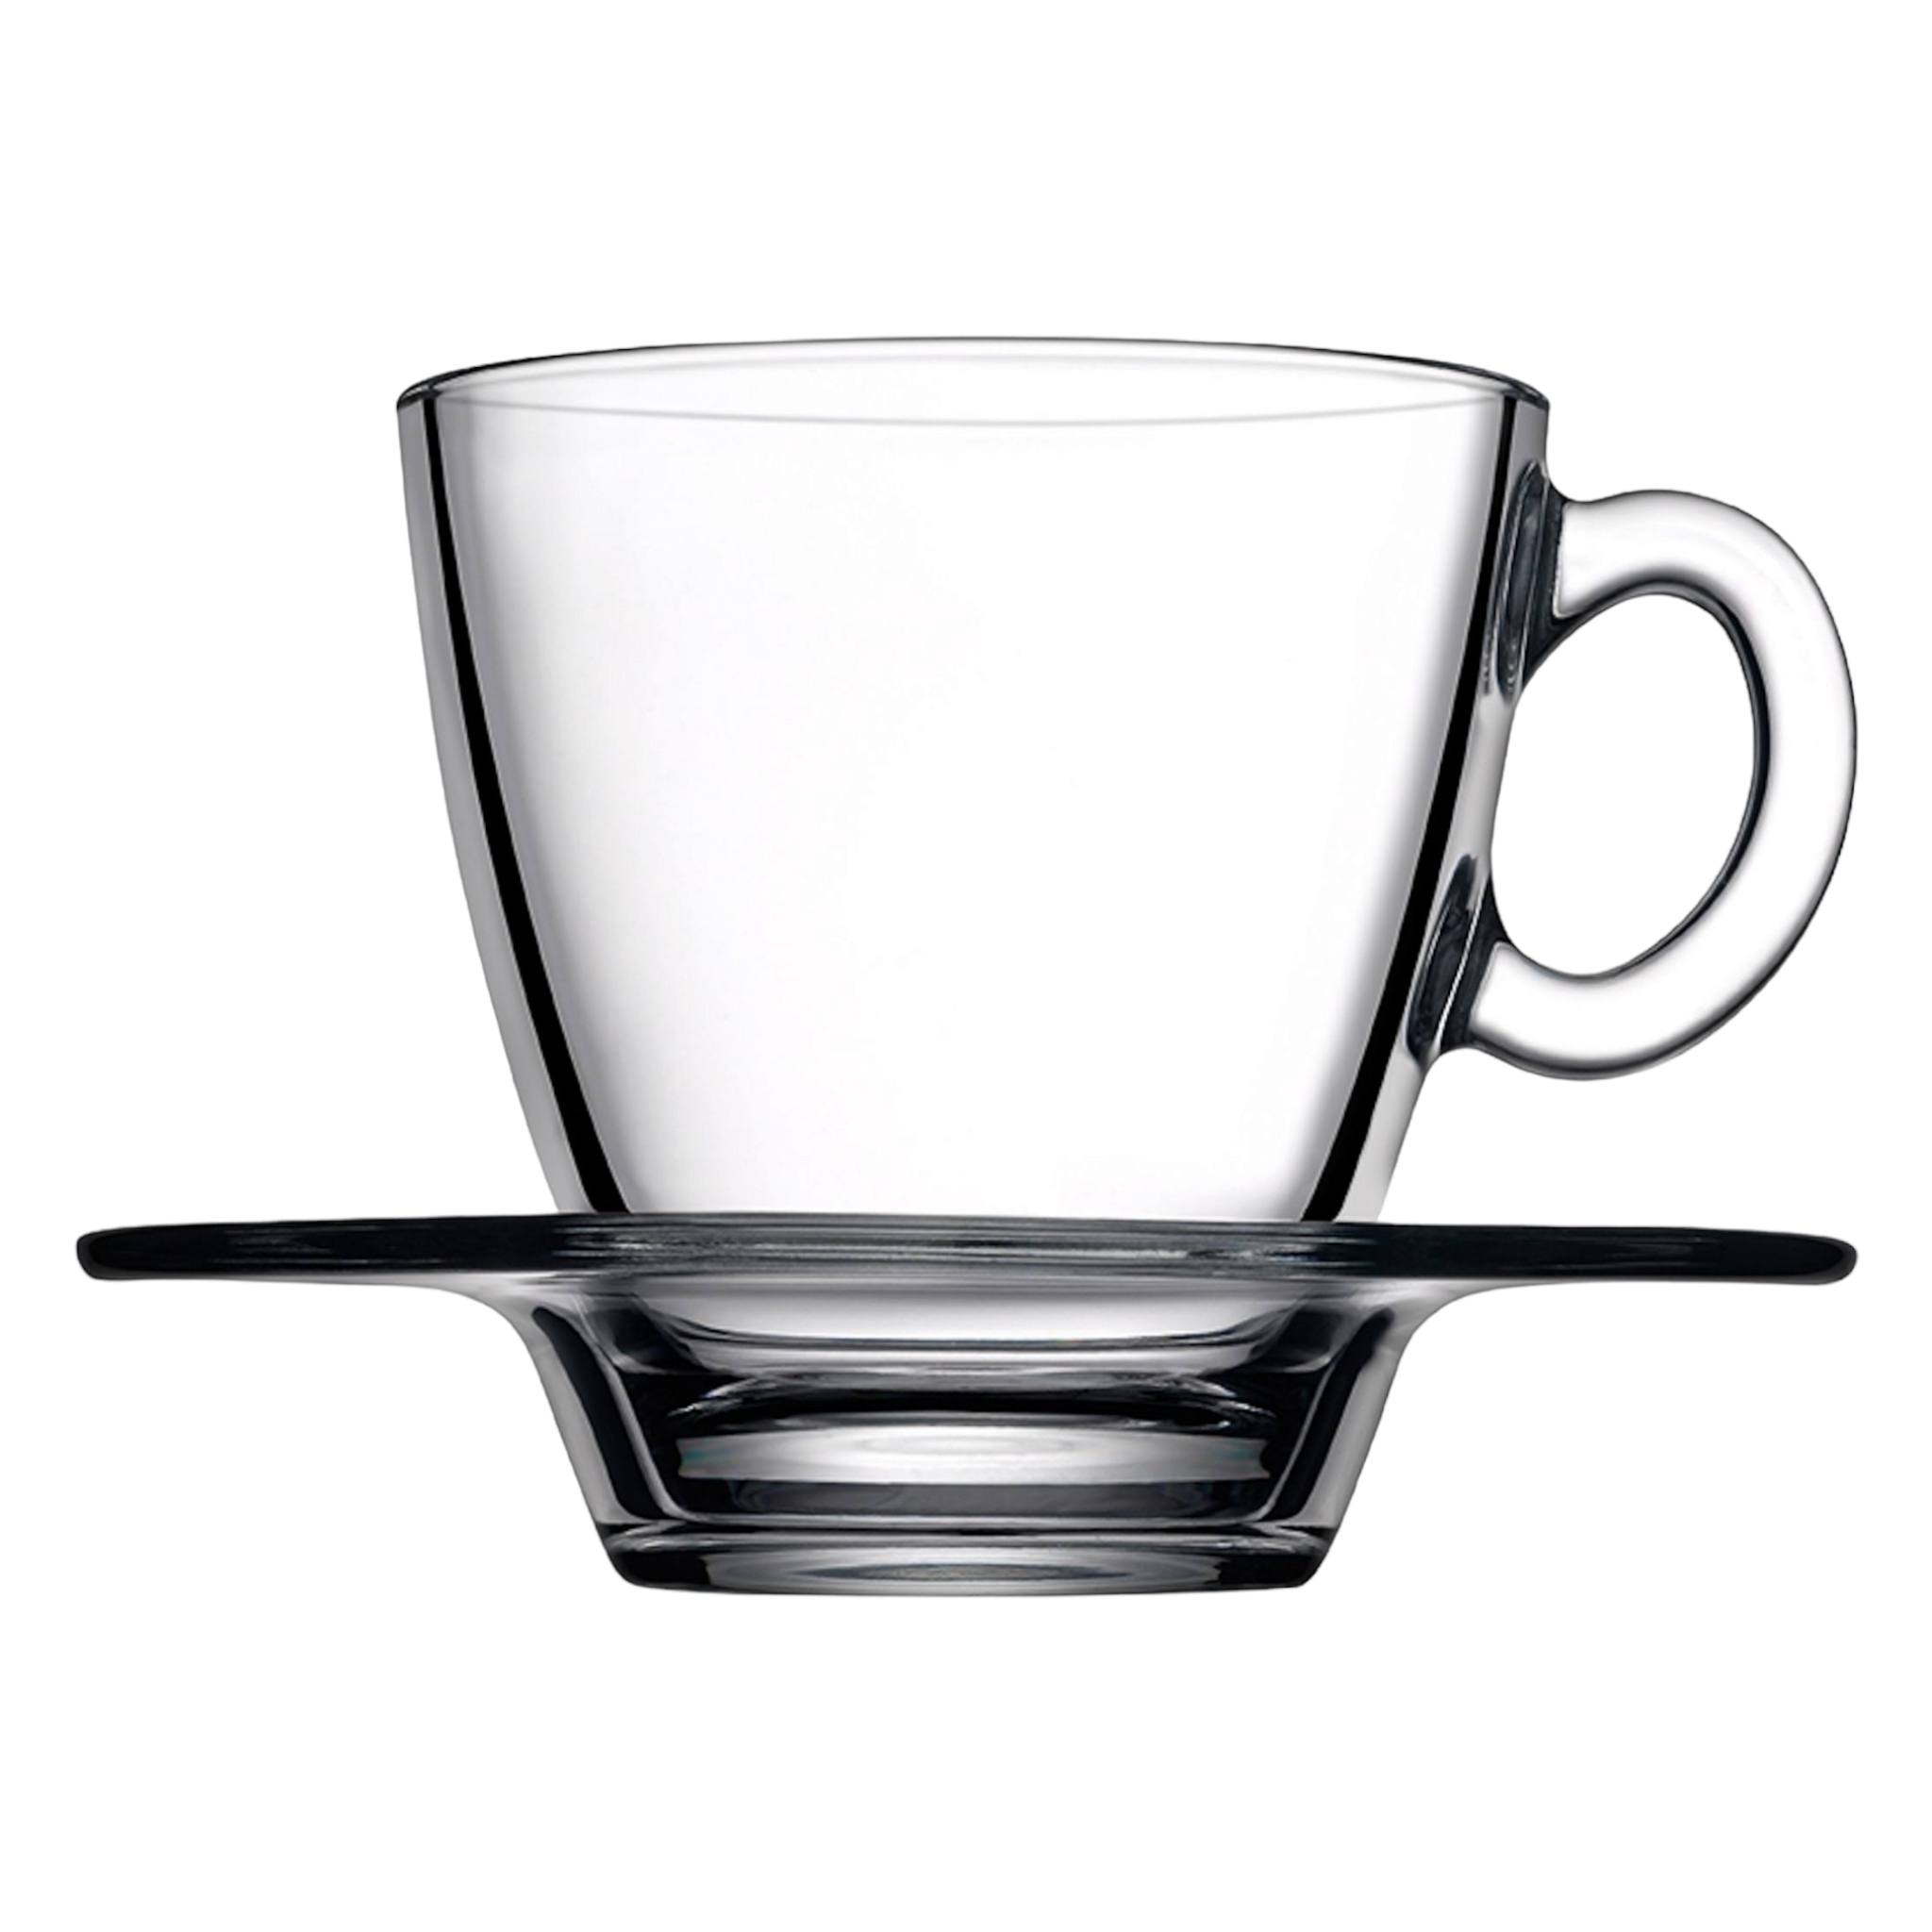 Pasabahce 215ml Aqua Cofee Cup and Saucer Set 6pcs